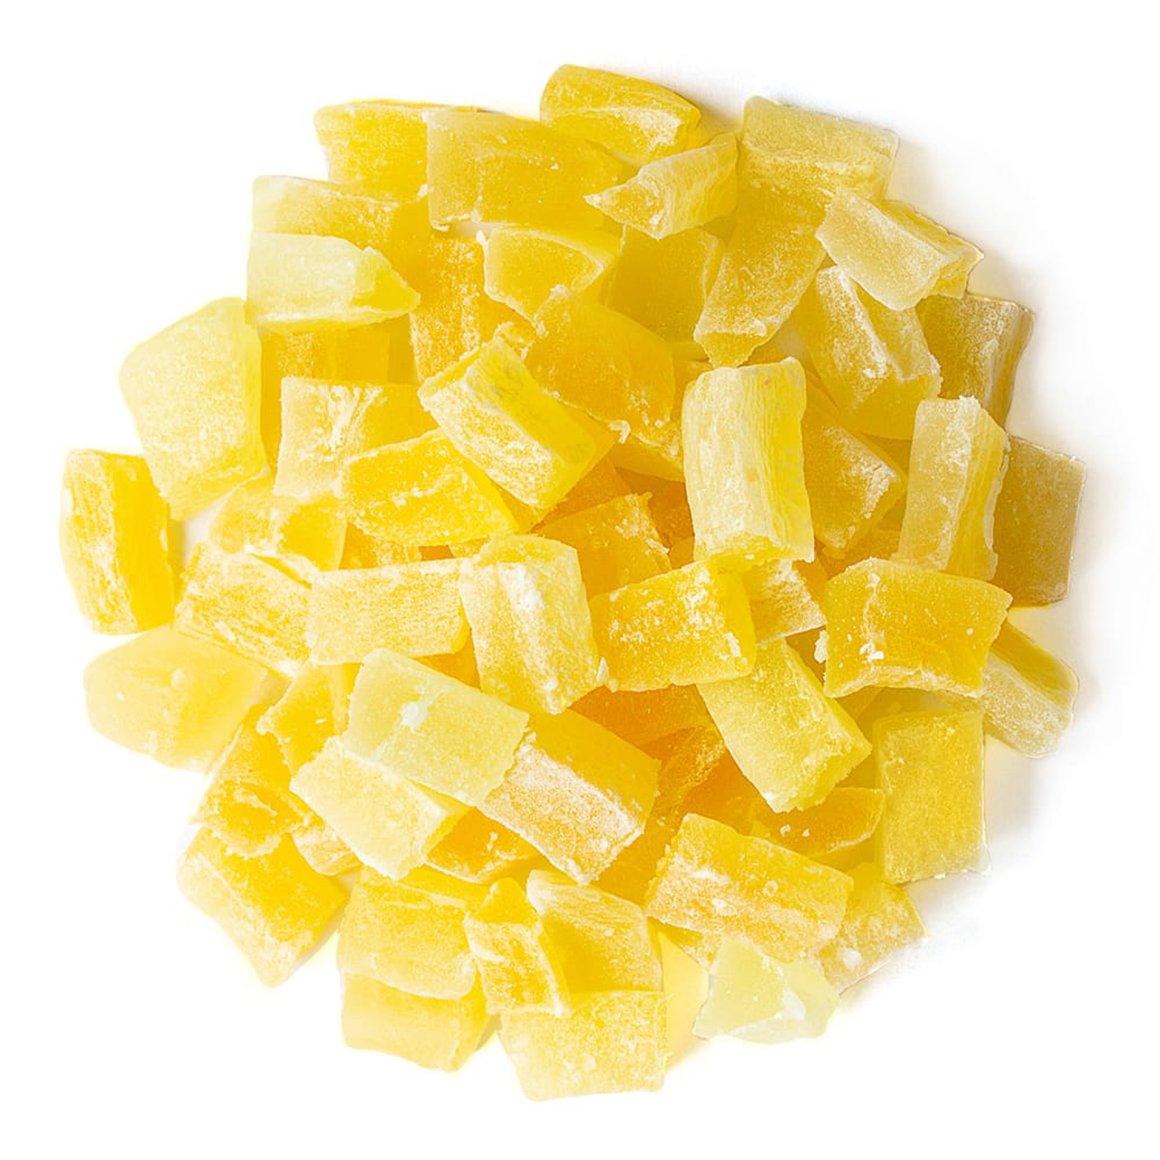 diced-dried-pineapple-main